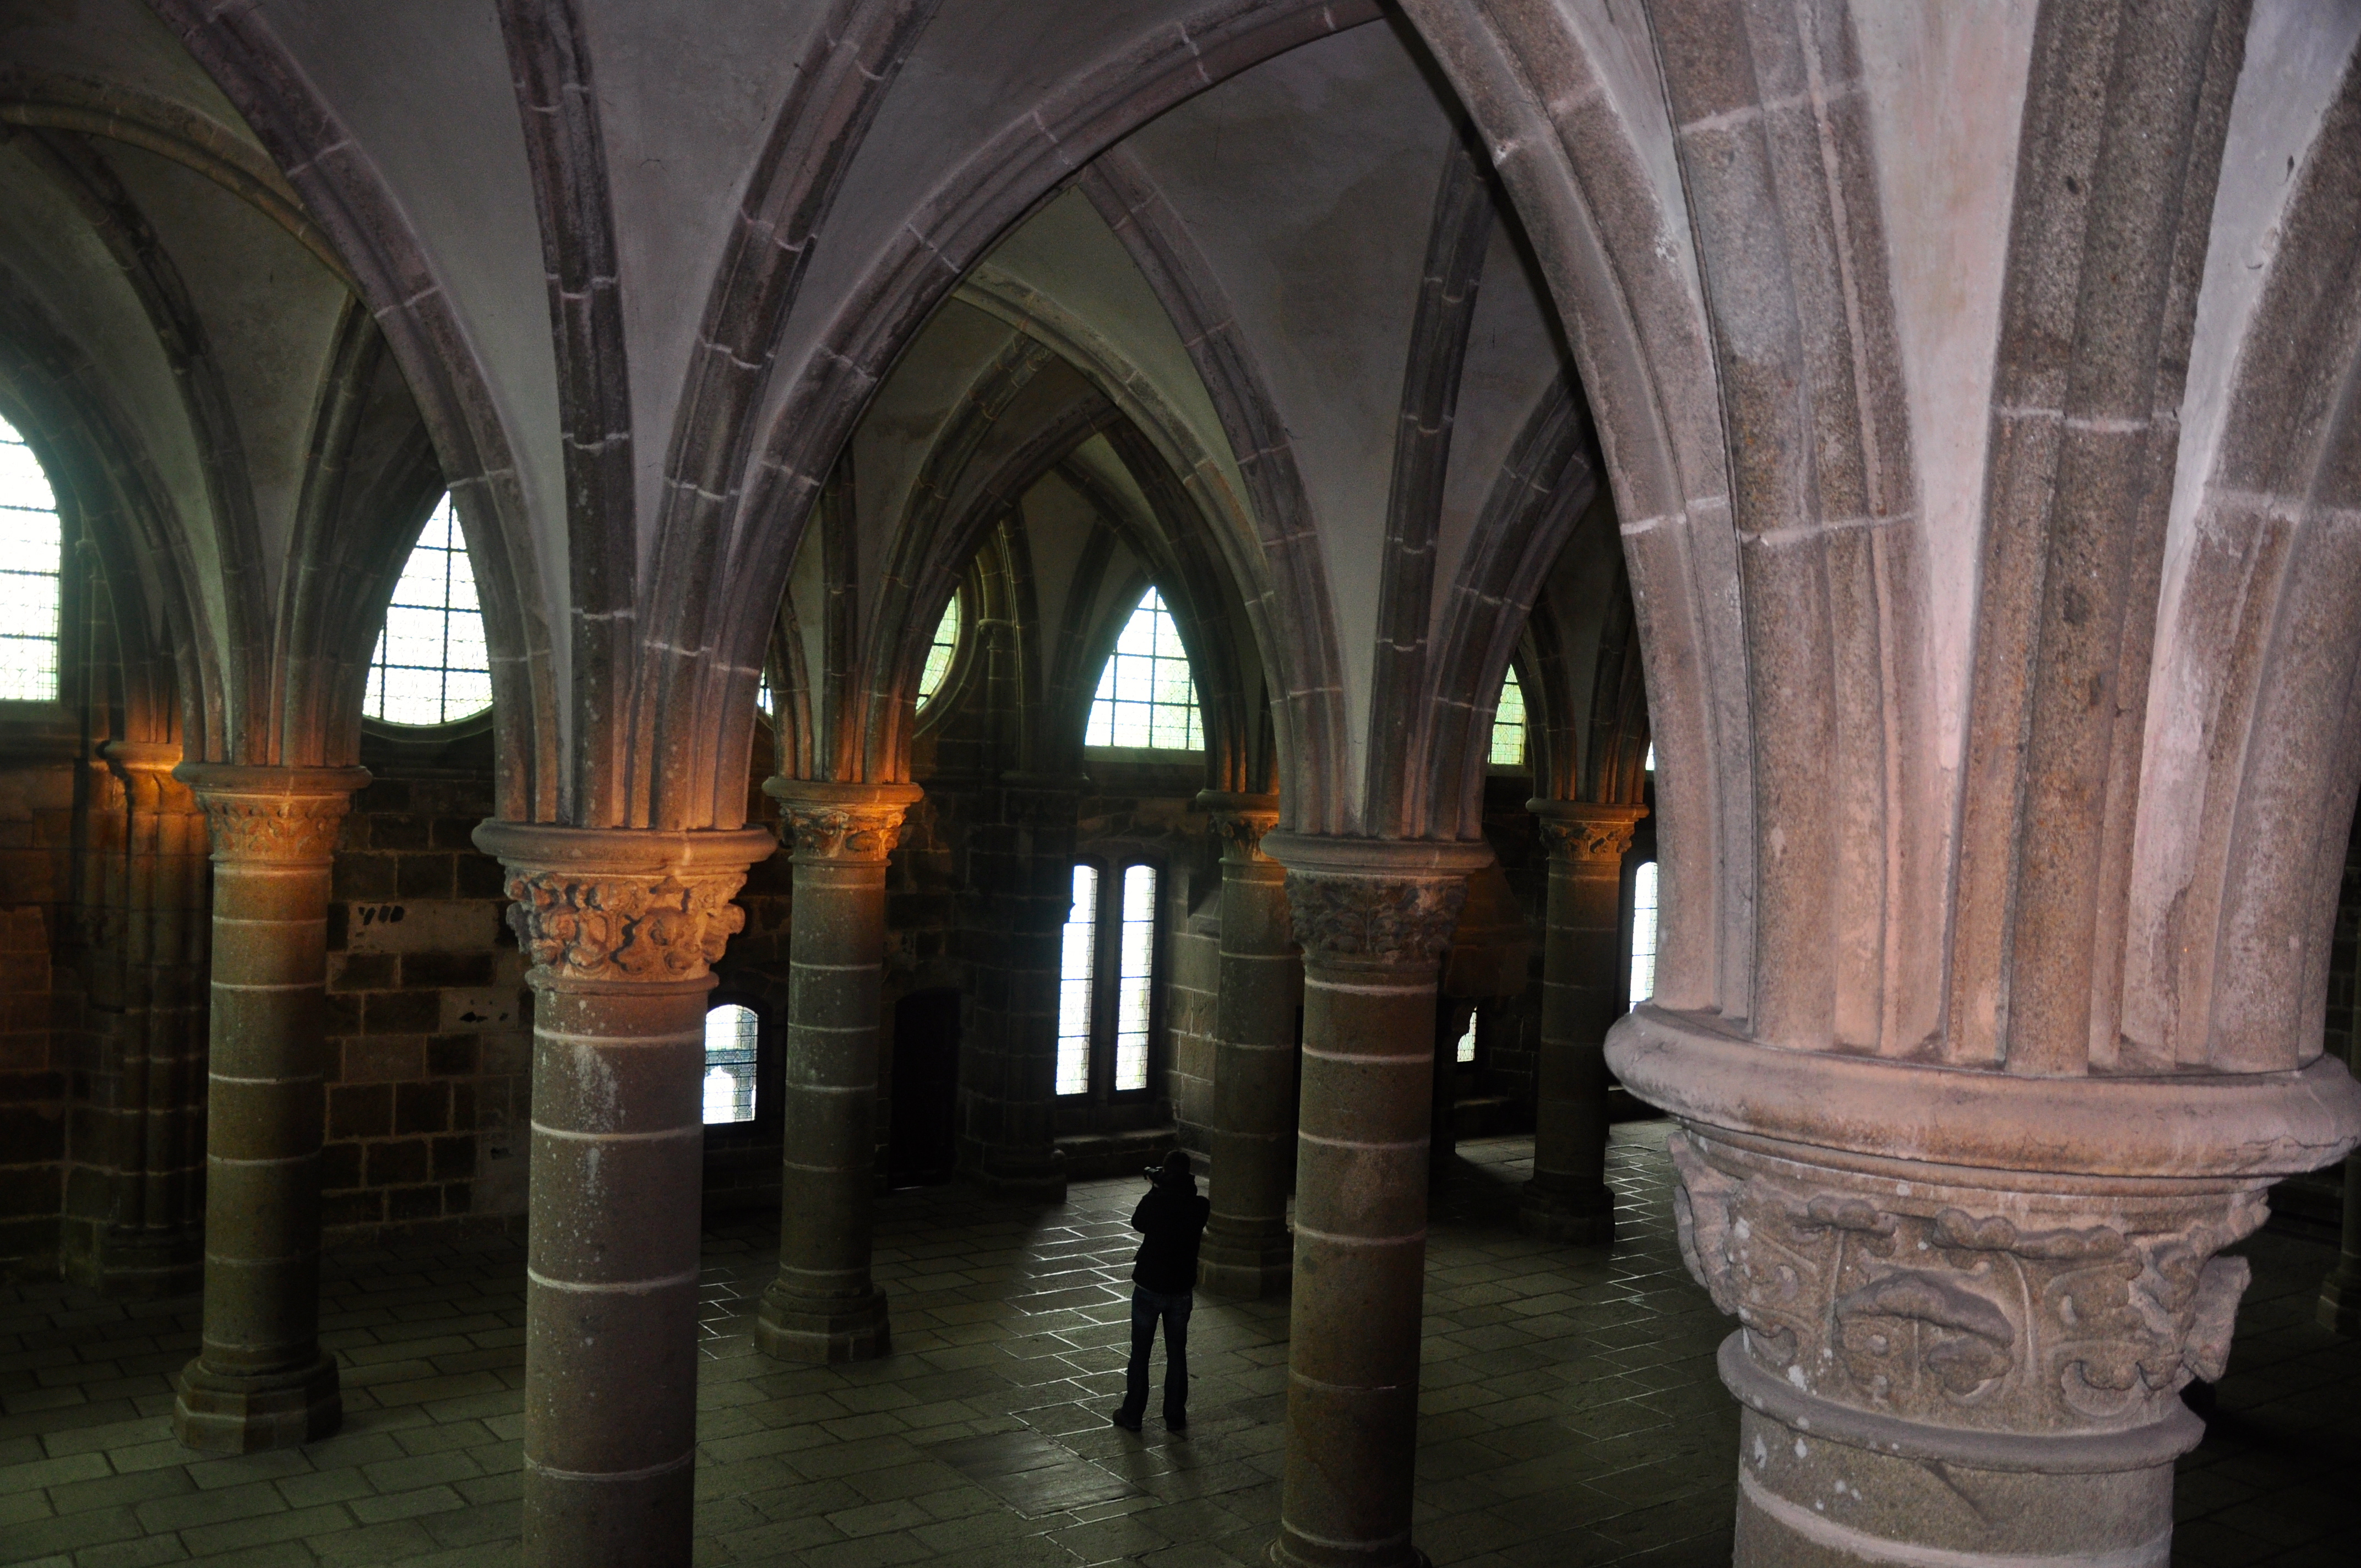 Os arcos góticos sustentam a estrutura da abadia.